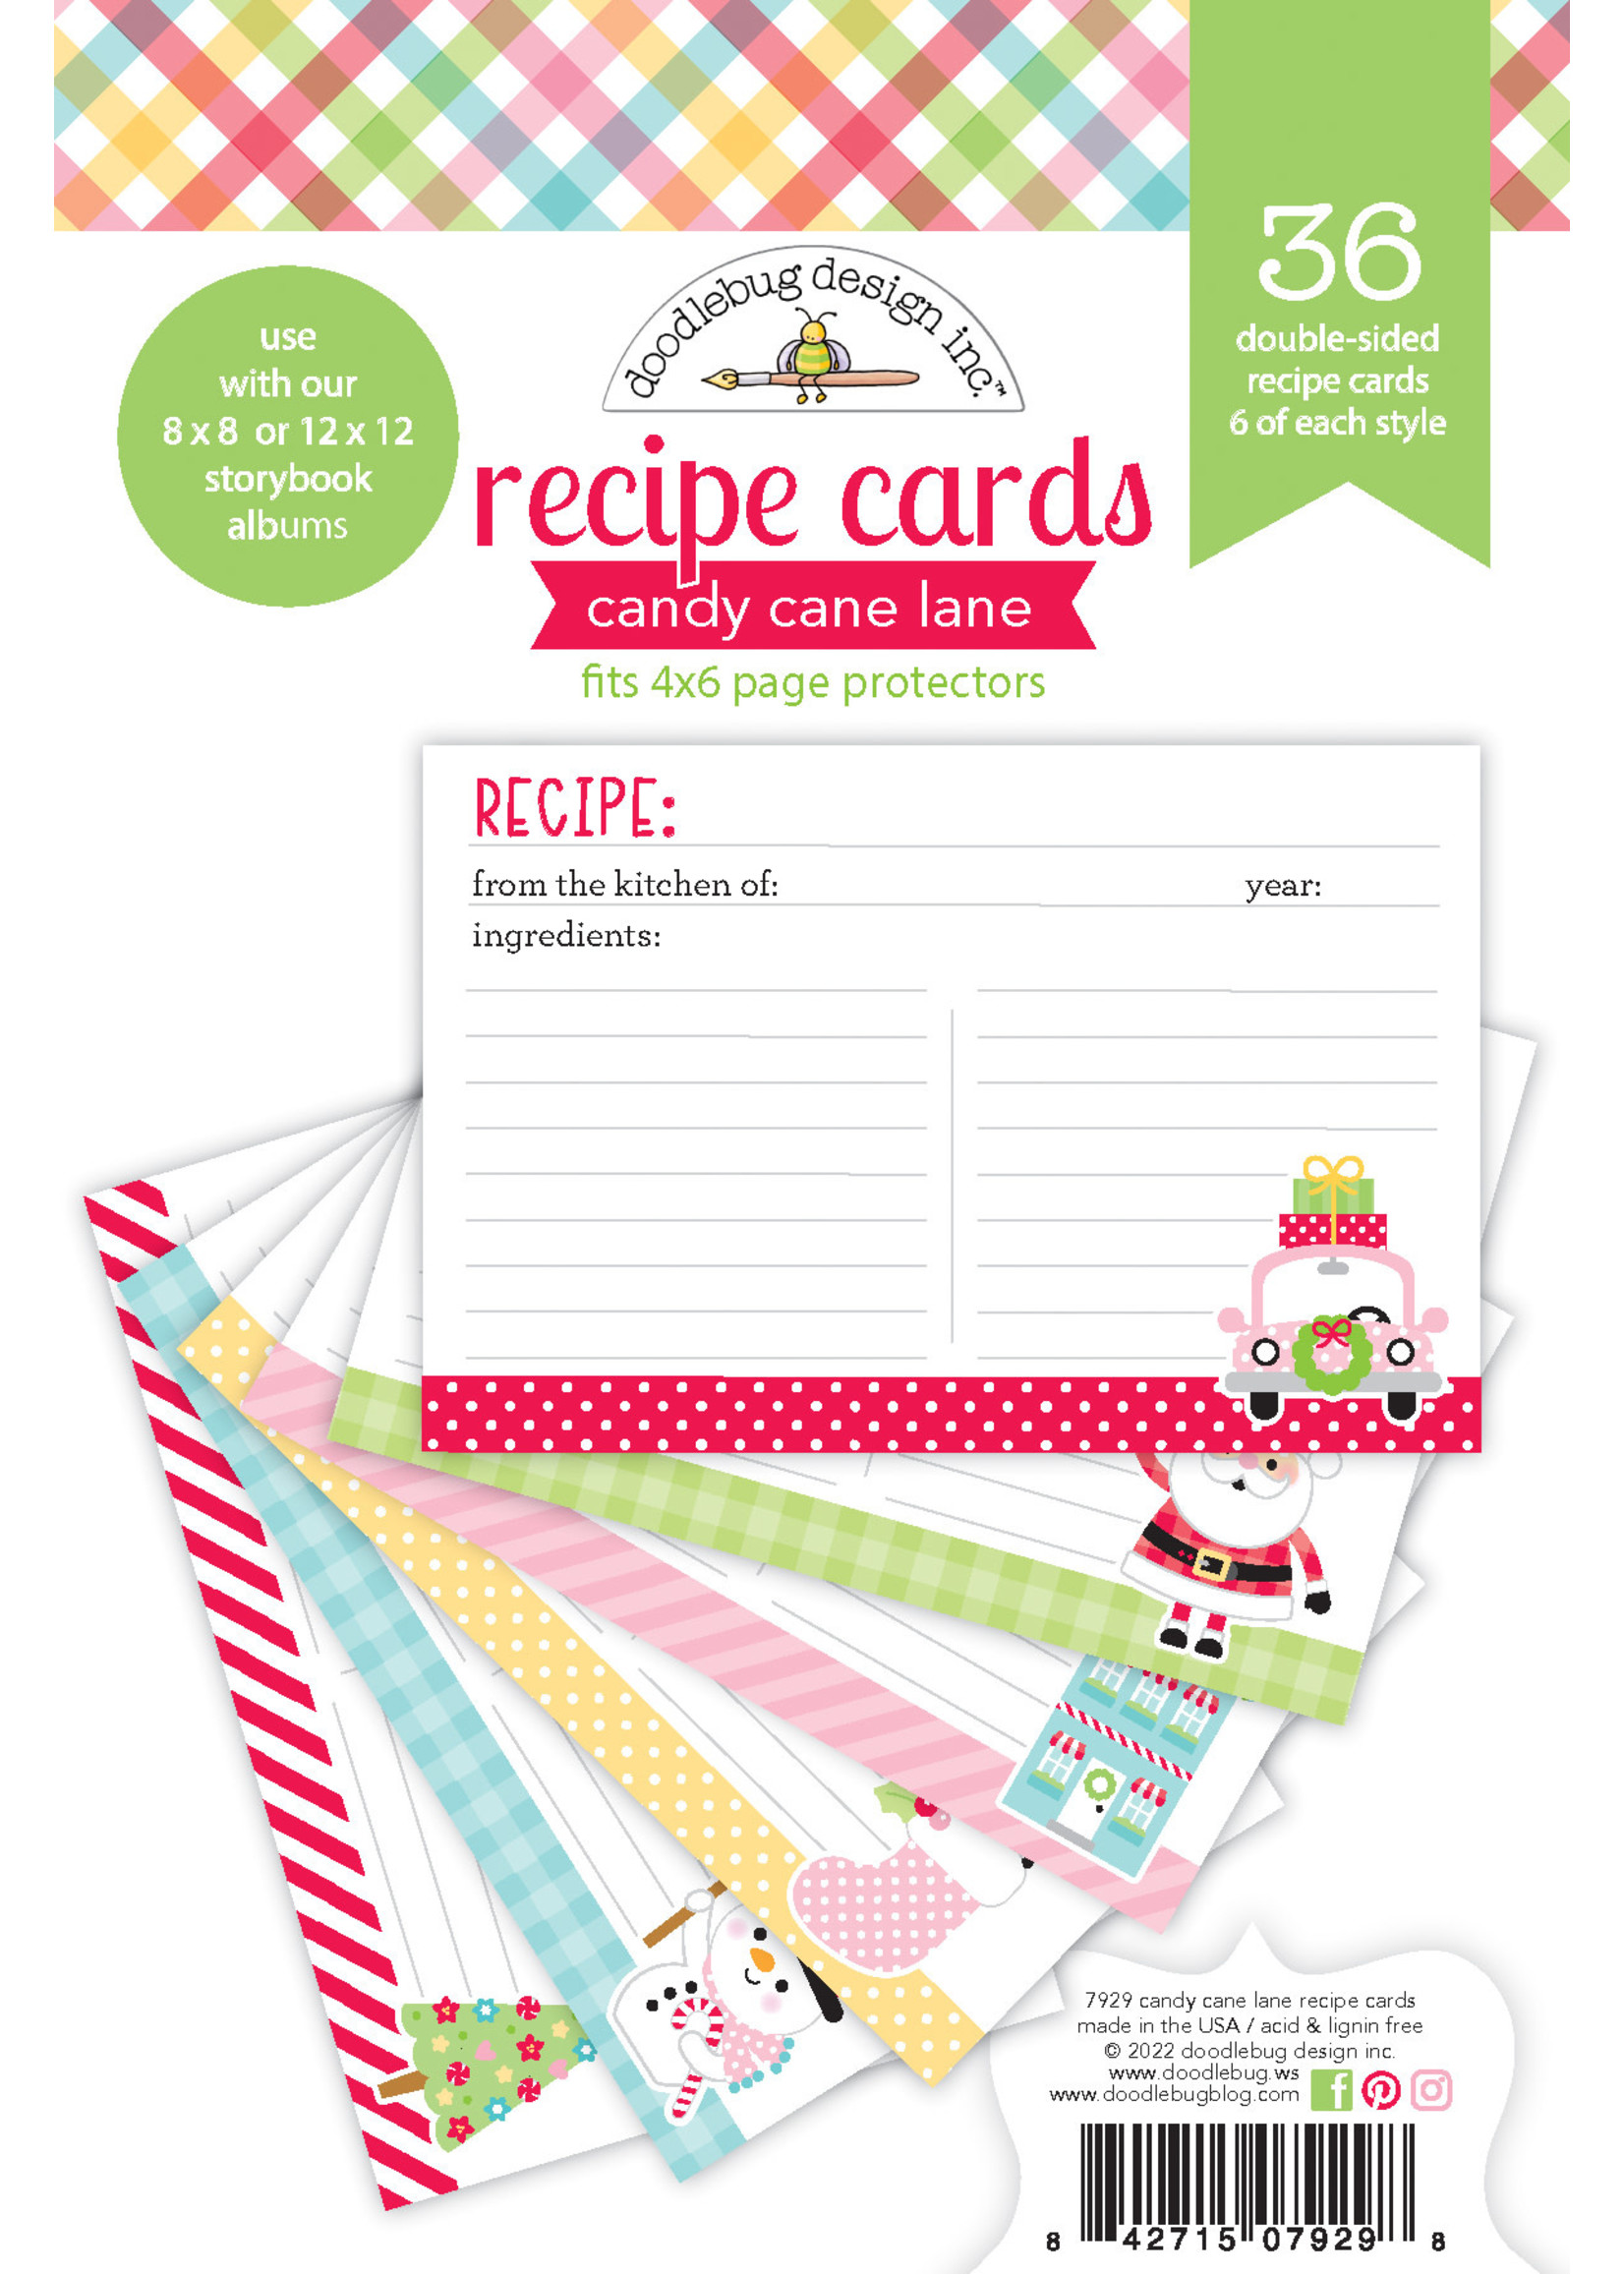 DOODLEBUG candy cane lane: recipe cards